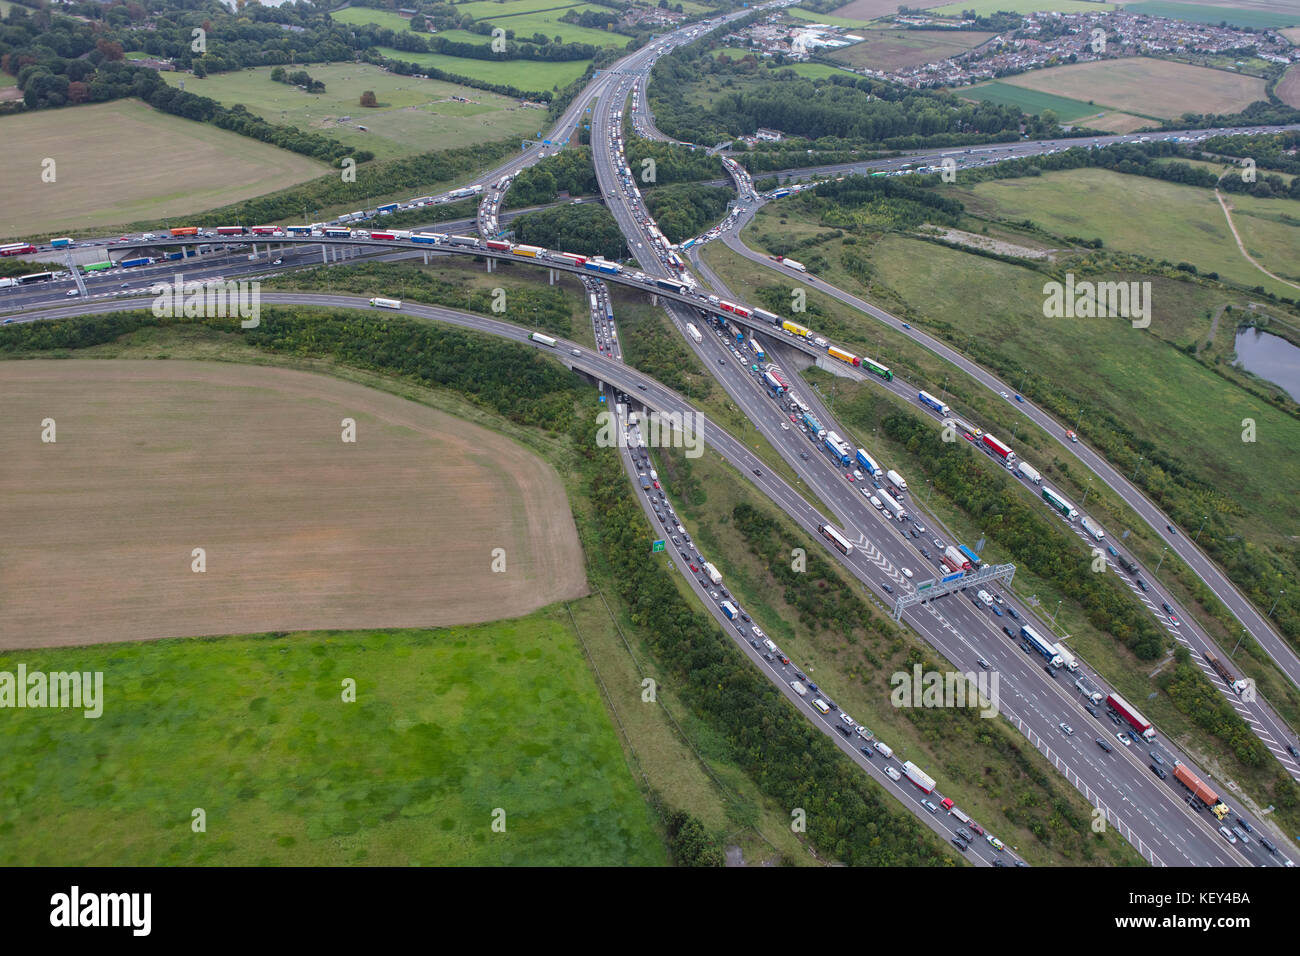 Eine Luftaufnahme anzeigen Staus an der Kreuzung 2 der Autobahn M25 London Orbital Stockfoto